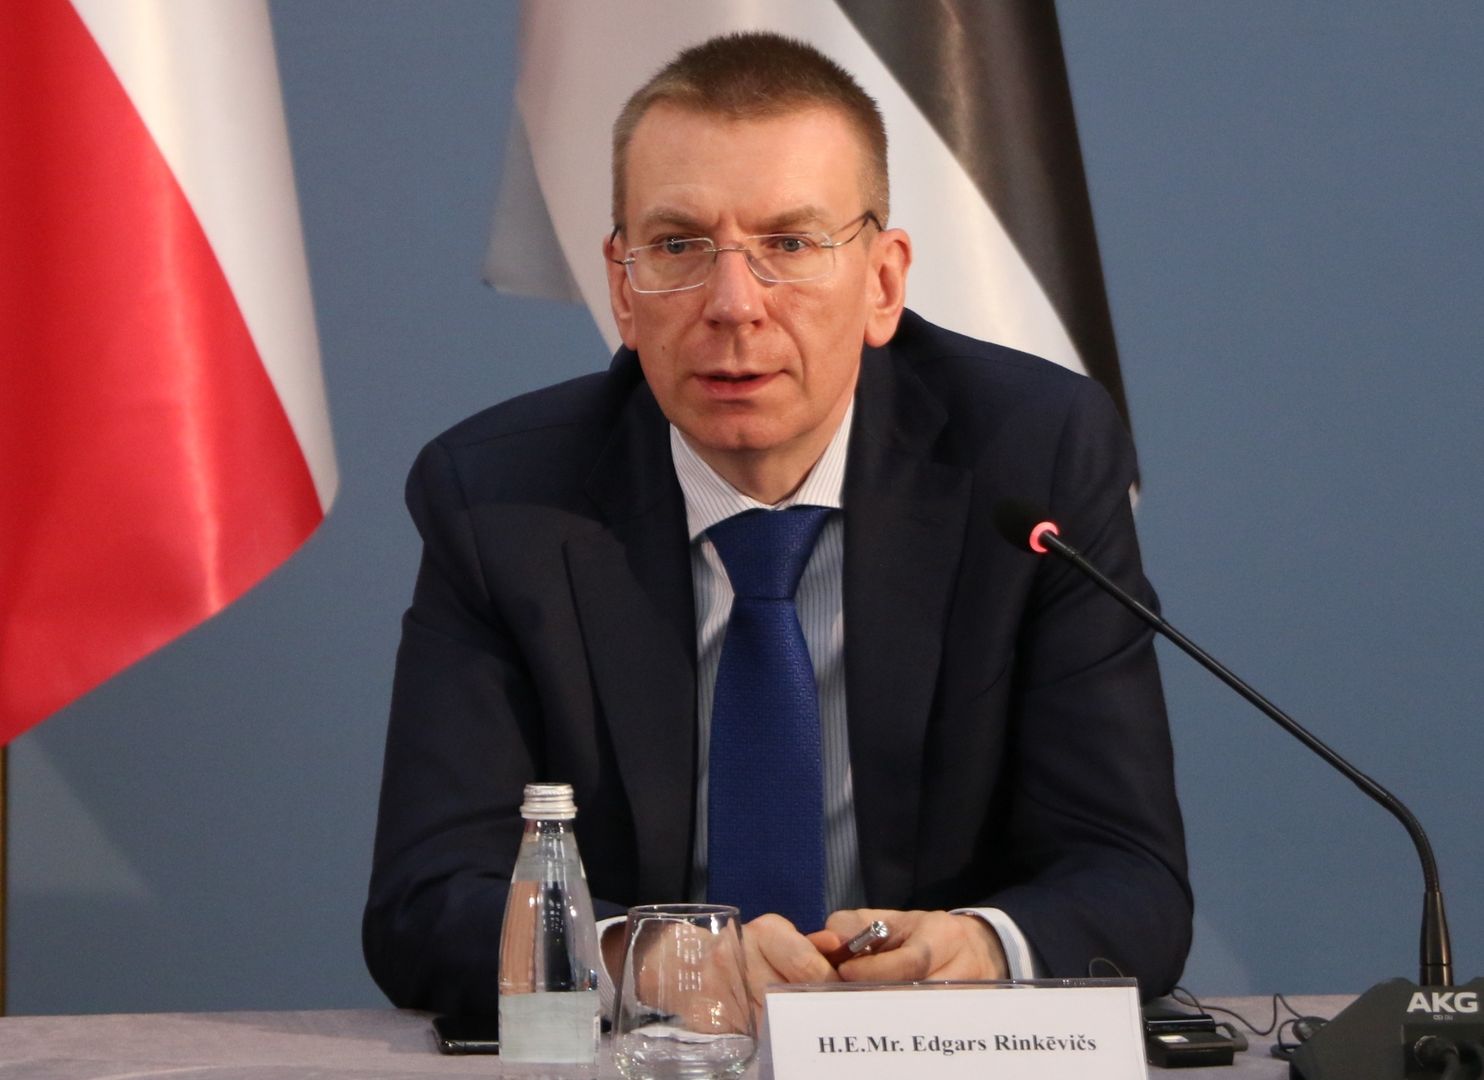 Łotewski minister złożył gratulacje Putinowi: "życzę porażki"